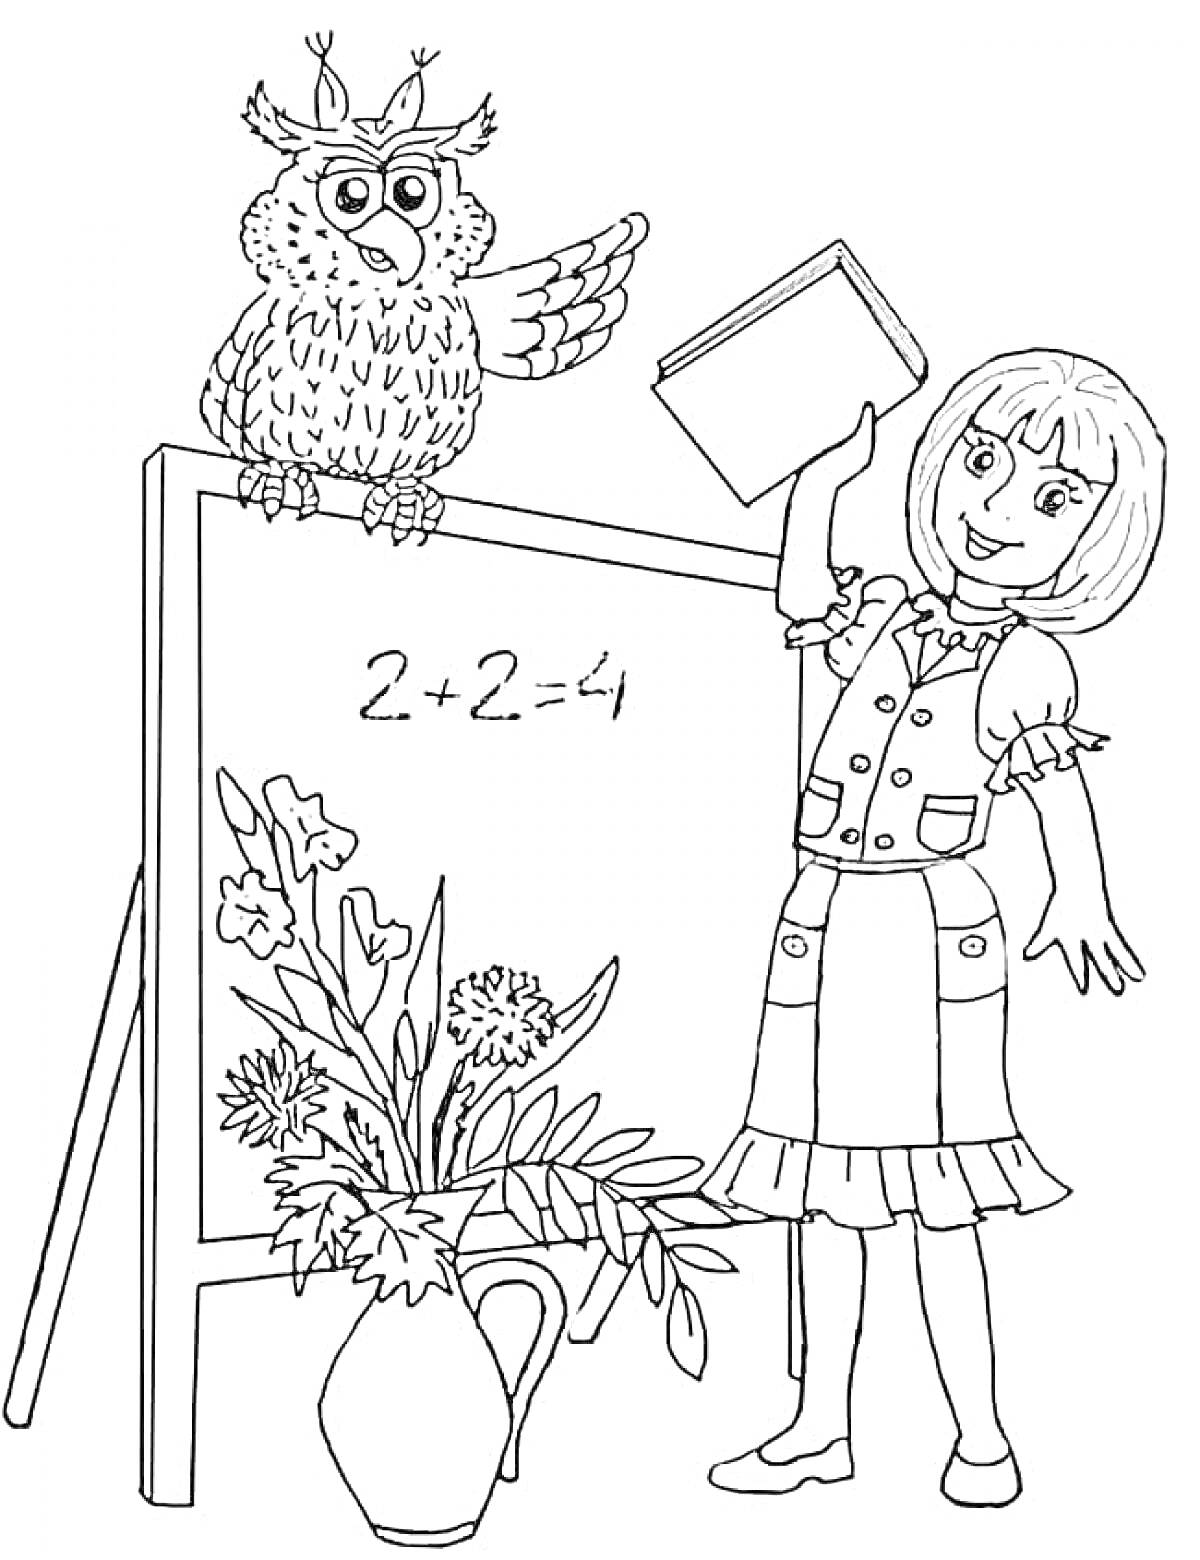 Раскраска Учитель с книгой, сова на доске, математическое уравнение, цветы в вазе